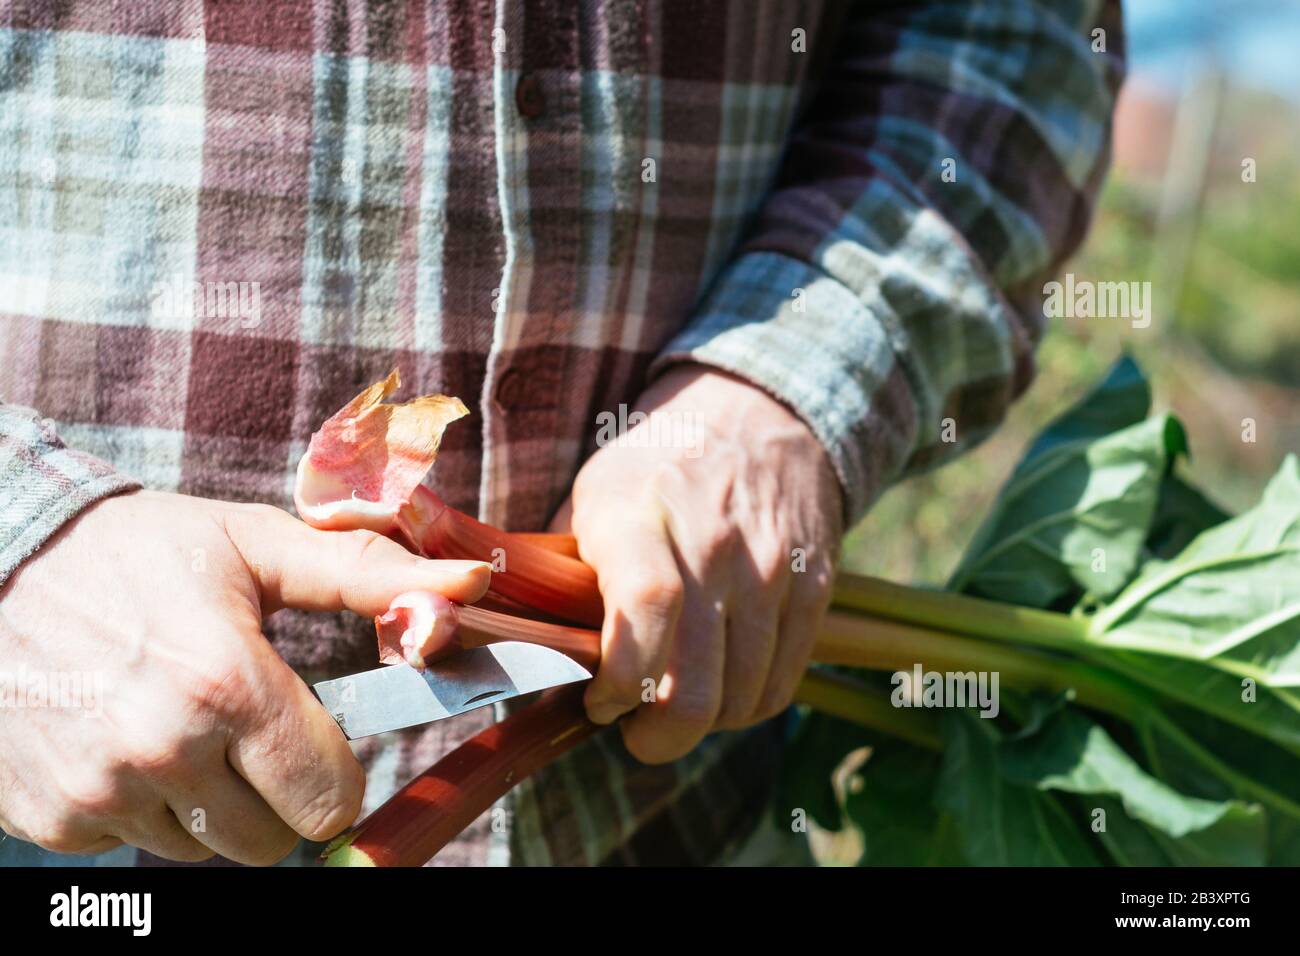 Gärtner schneiden das Ende eines Rhabarbenstiels. Stockfoto